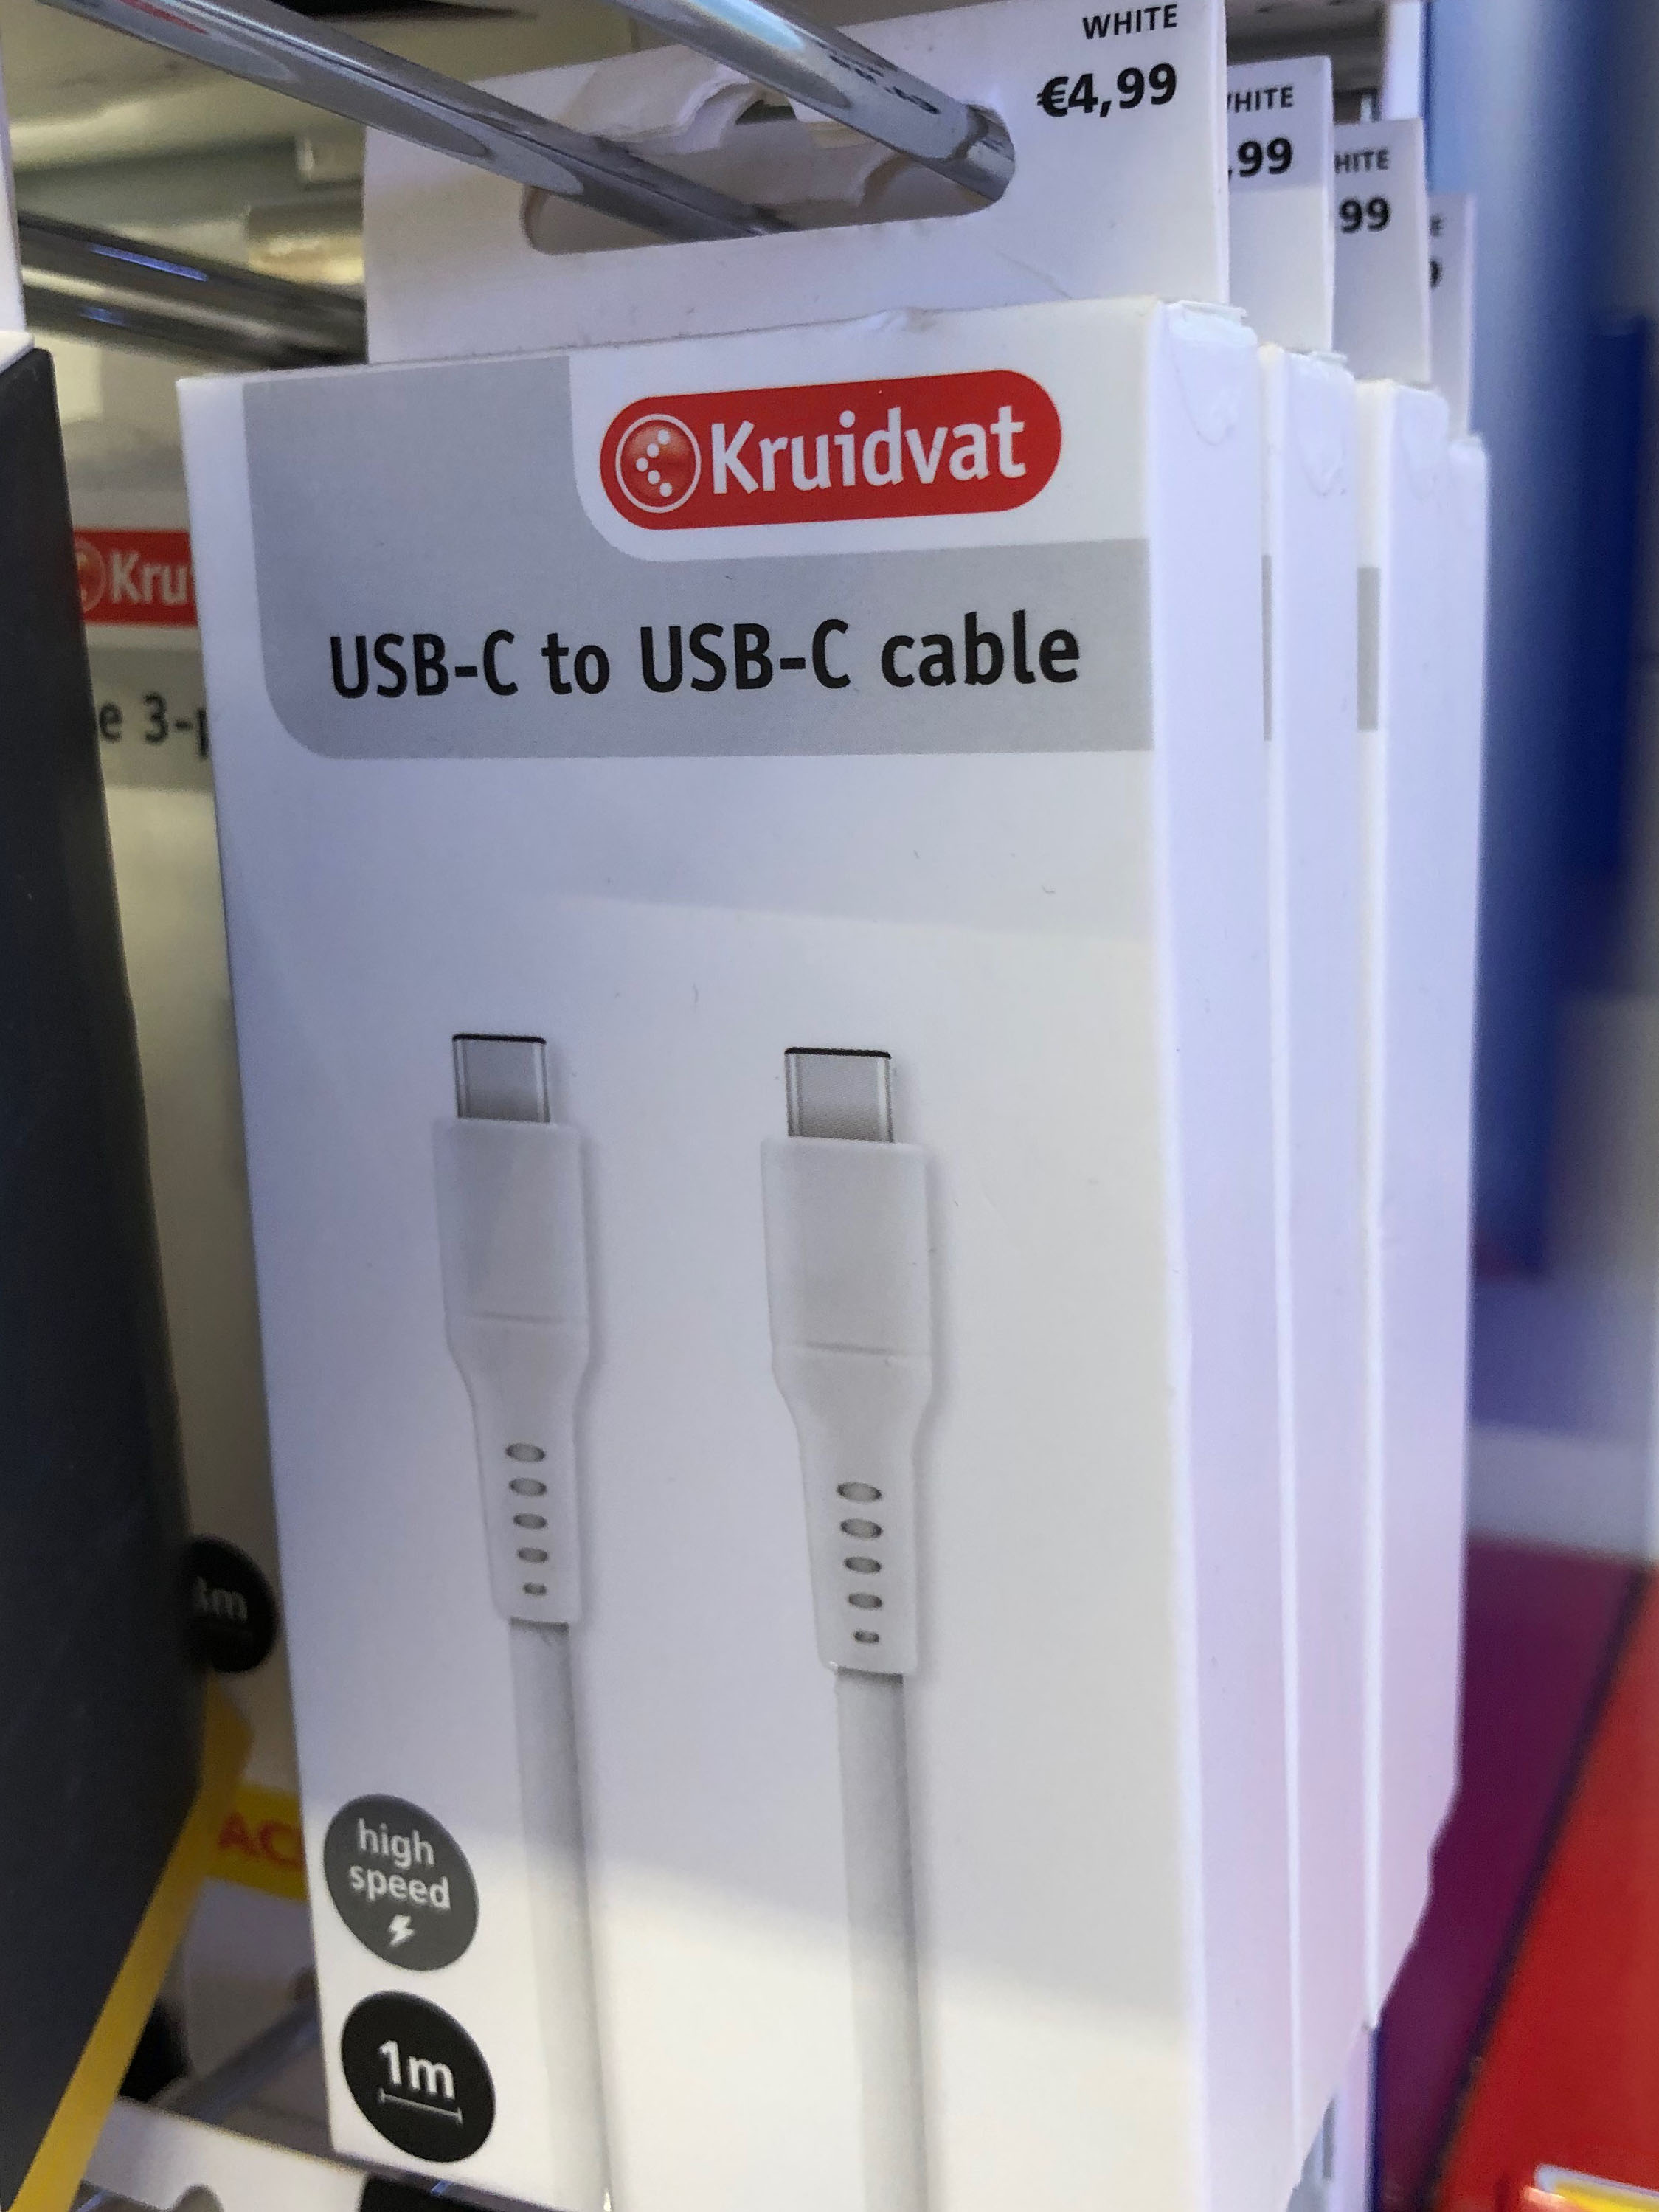 Intuïtie Dosering adverteren USB-C laadkabel bij Kruidvat voor maar 4,99